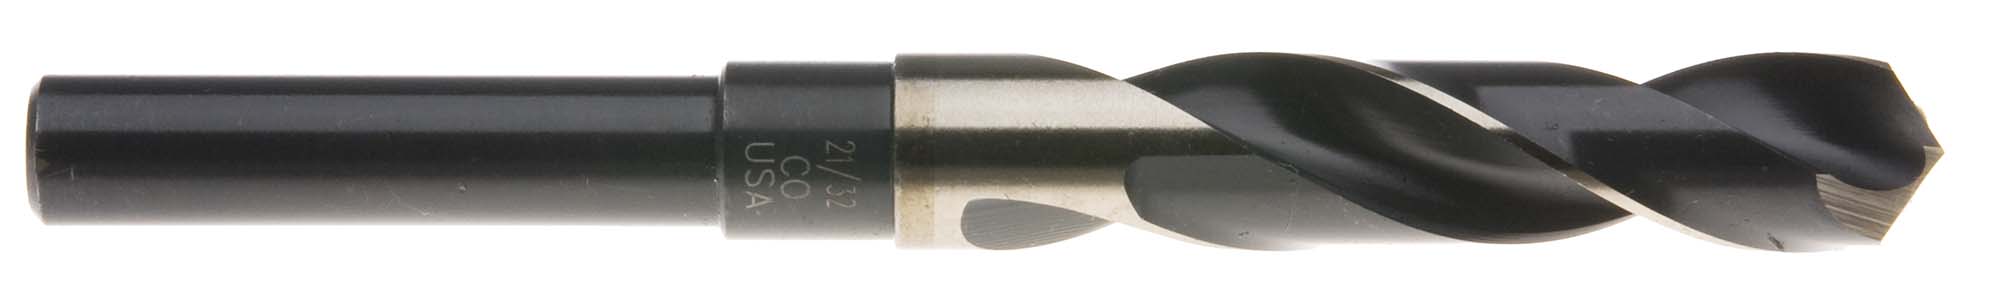 1" S and D Drill (1/2" shank) USA Cobalt